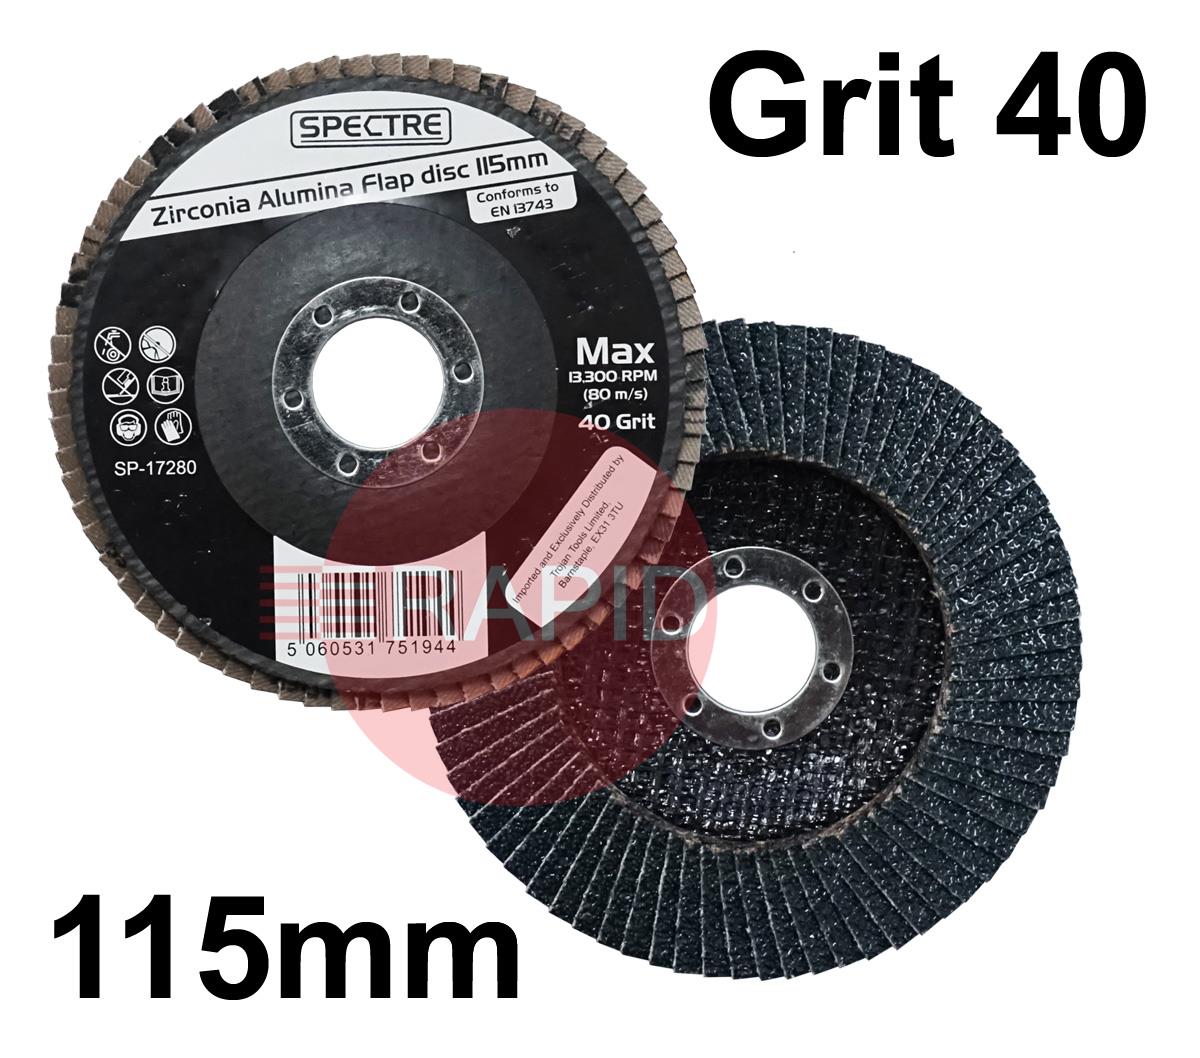 SP-17280  Spectre 115mm (4.5) Zirconium Flap Disc - Grit 40